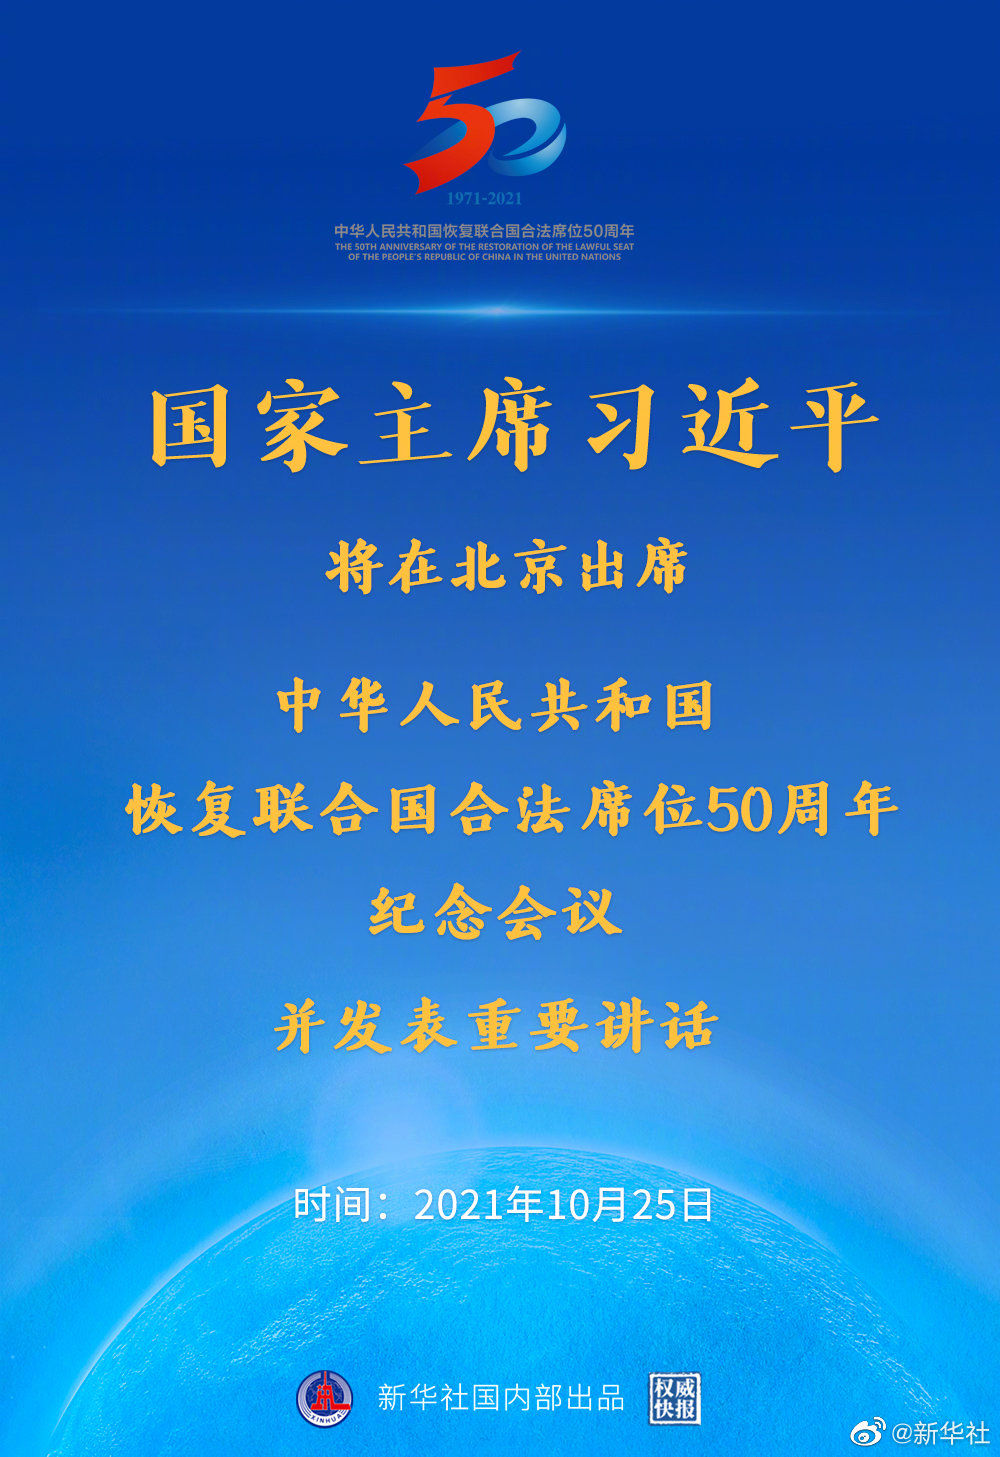 习近平将出席中华人民共和国恢复联合国合法席位50周年纪念会议